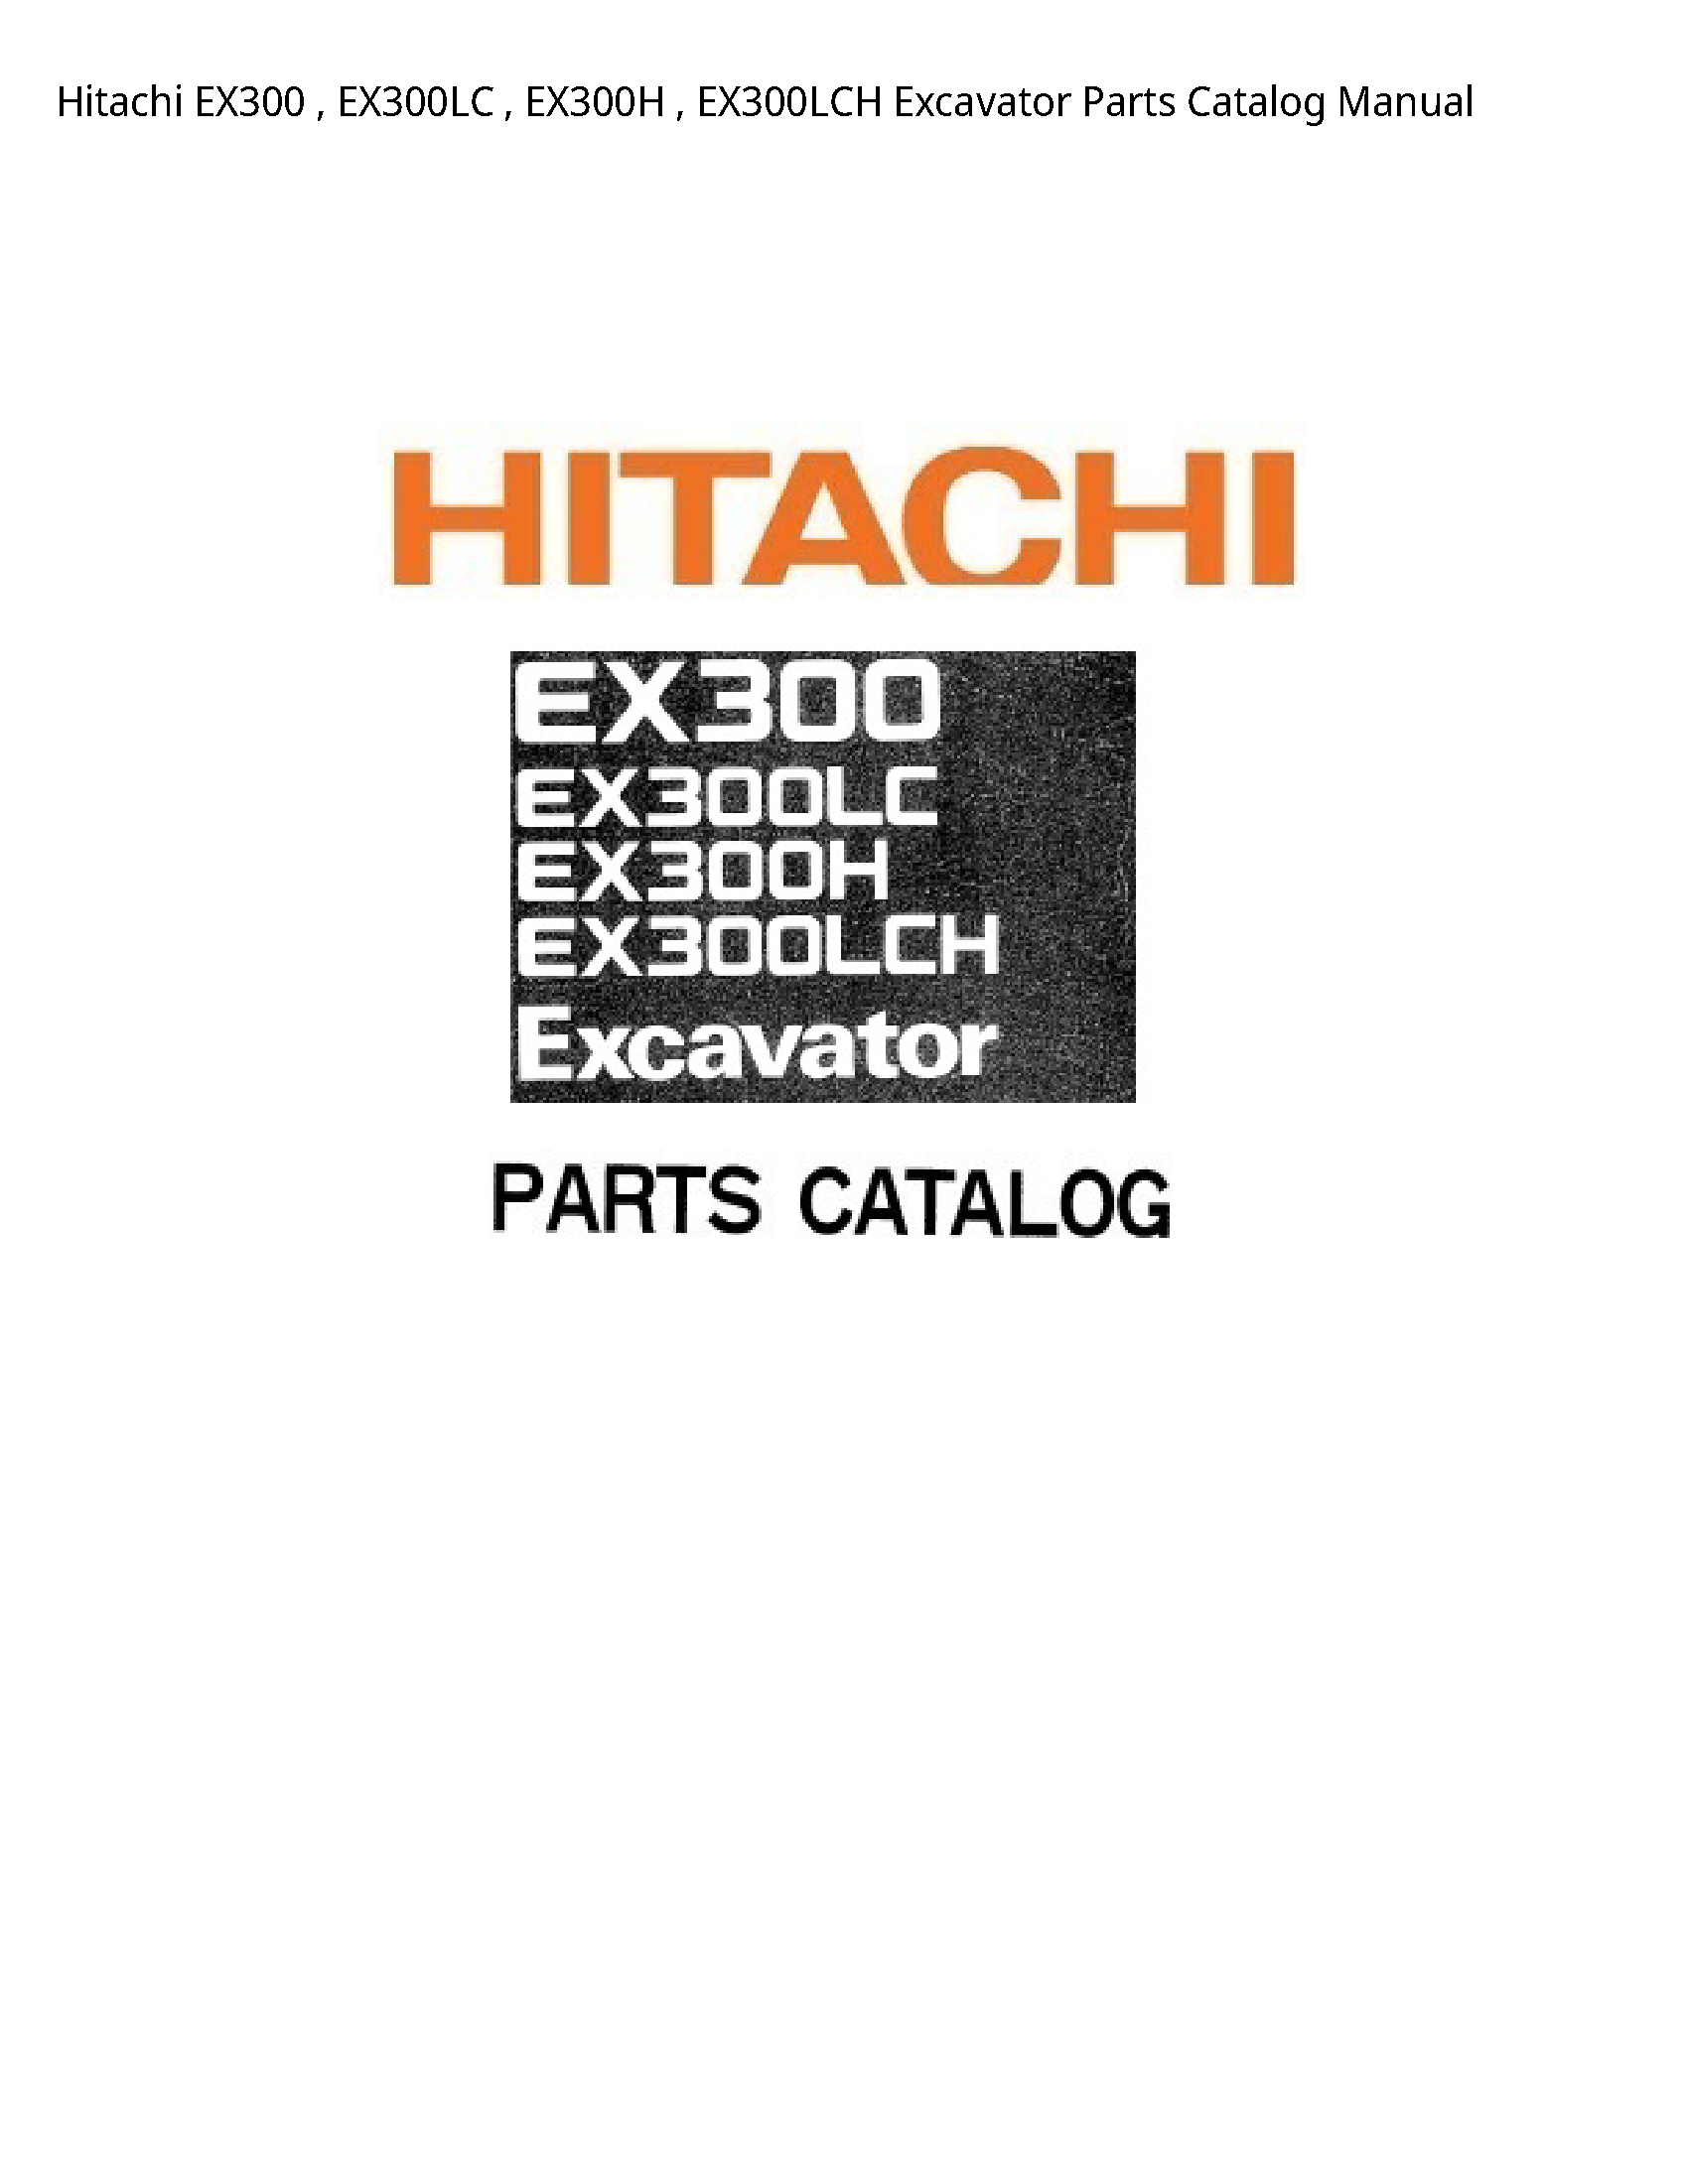 Hitachi EX300 Excavator Parts Catalog manual